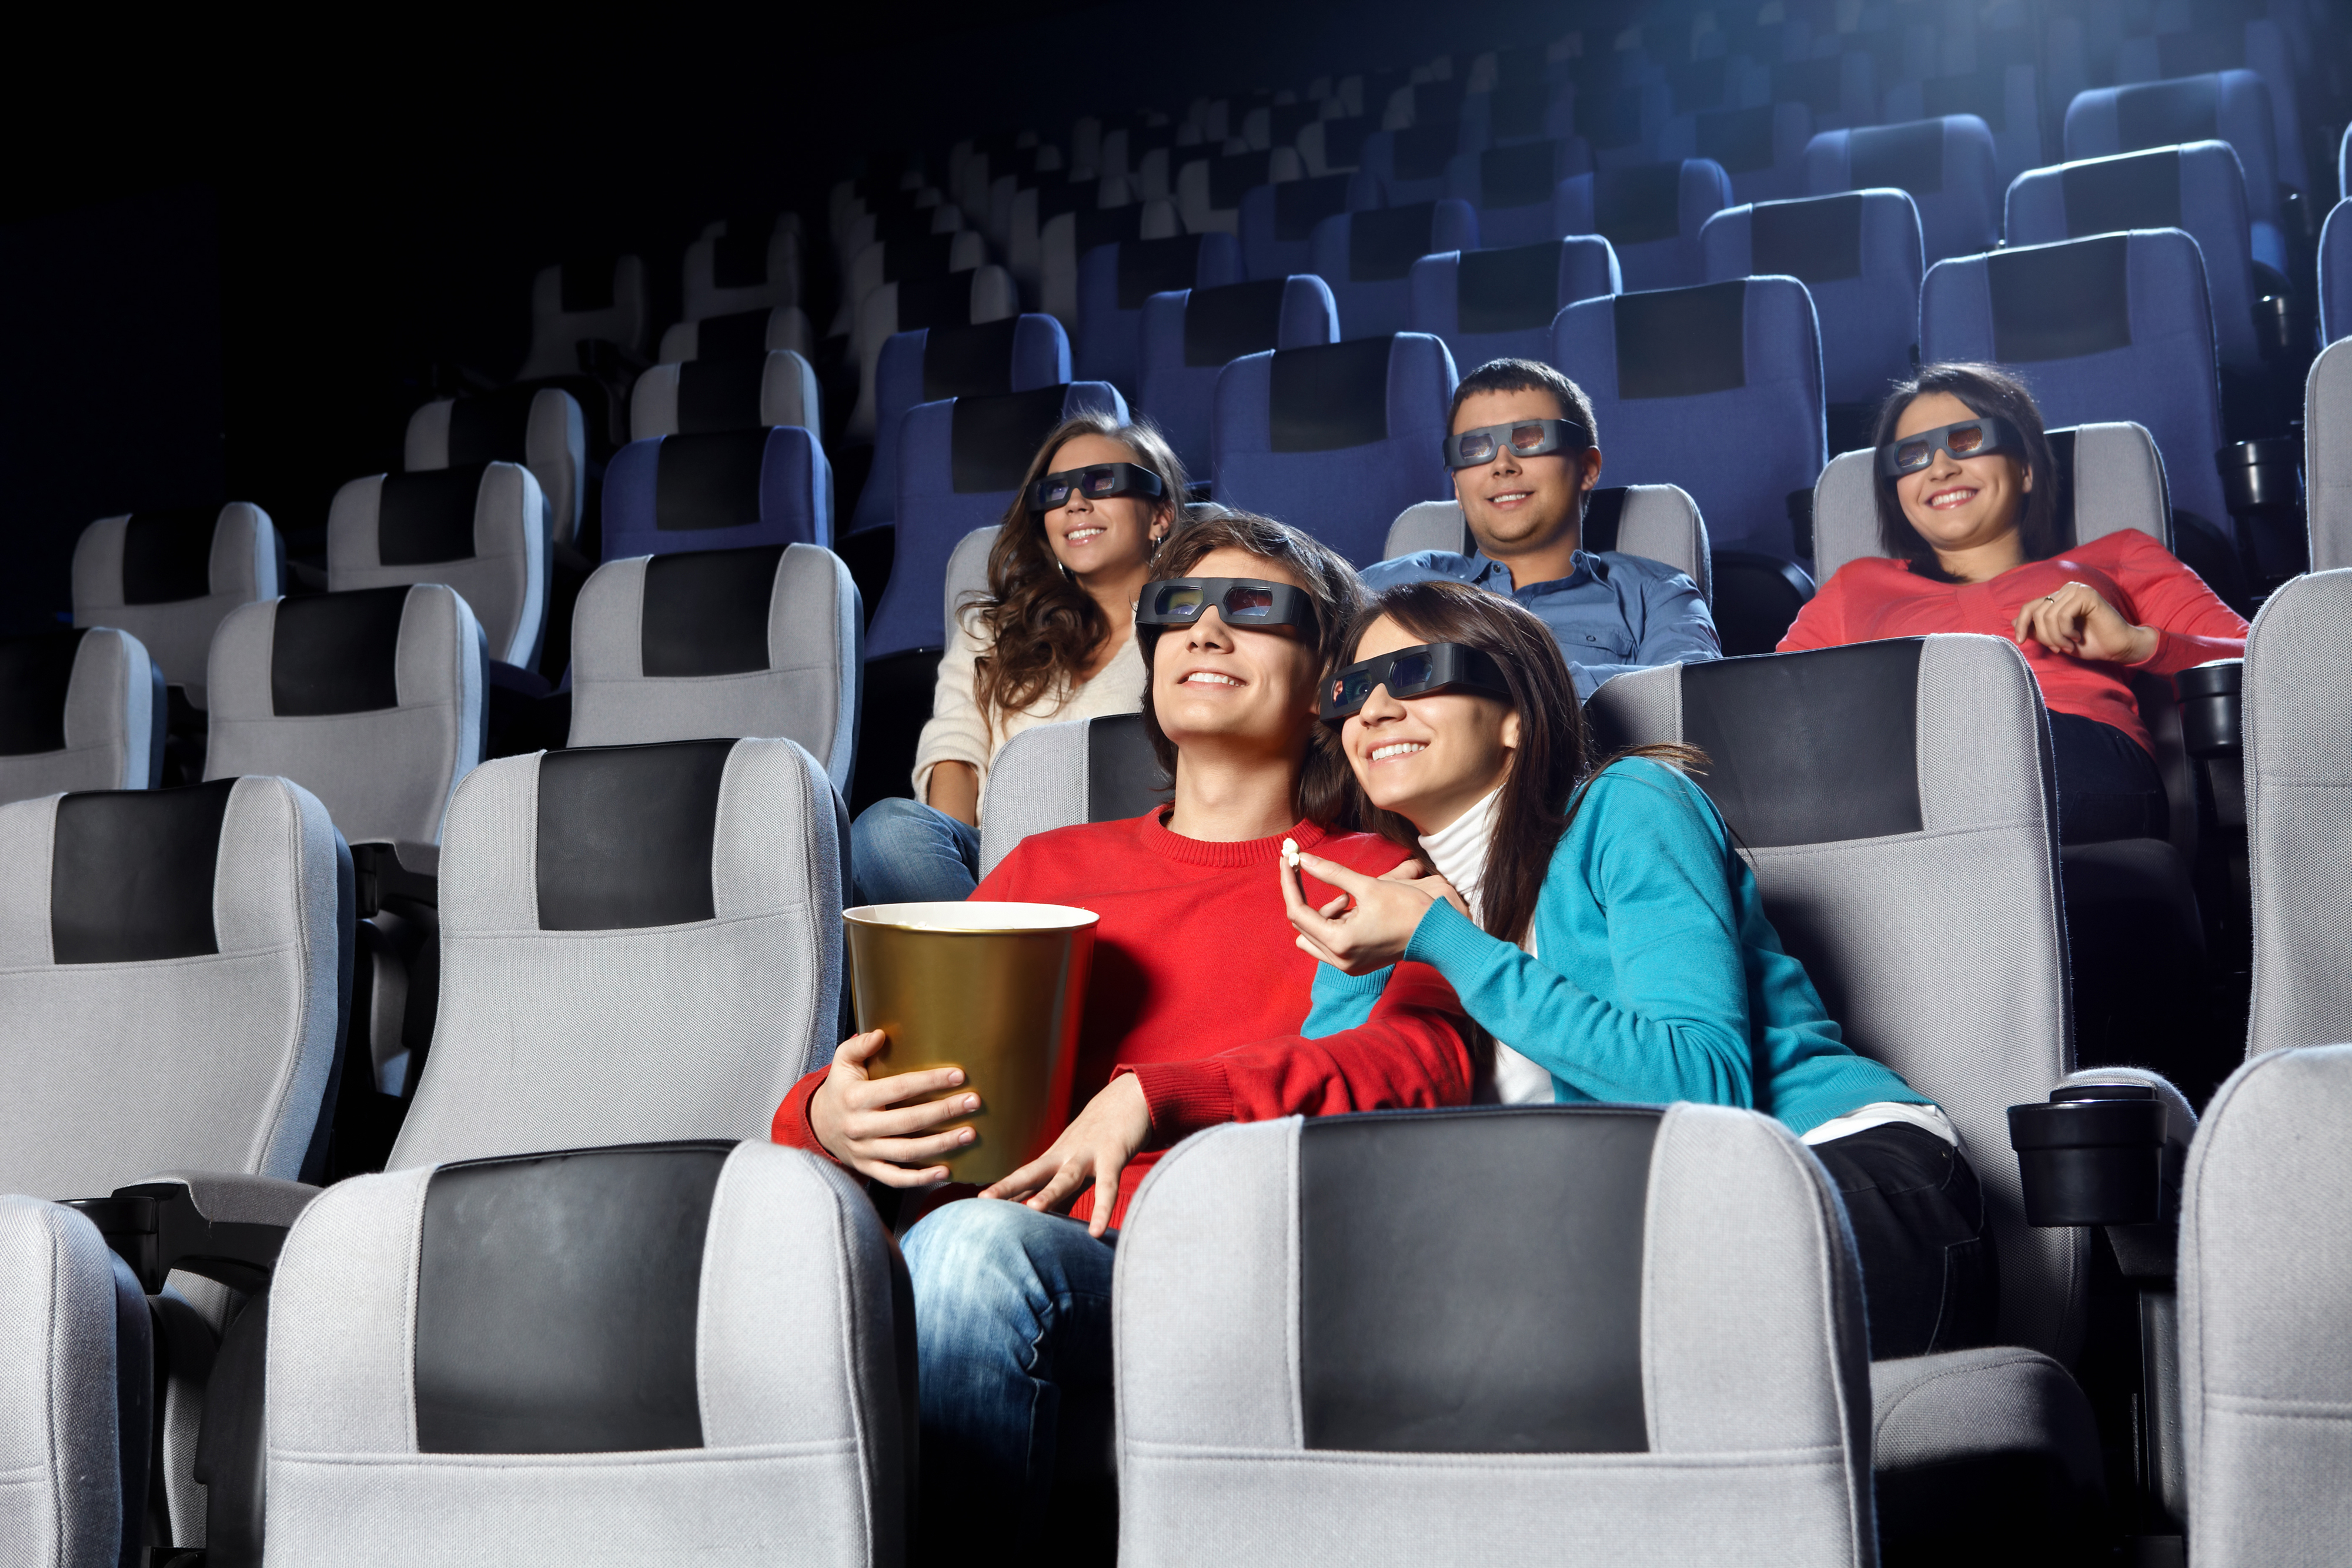 Revoluţia 3D a dublat numărul de spectatori din cinematografe în numai doi ani